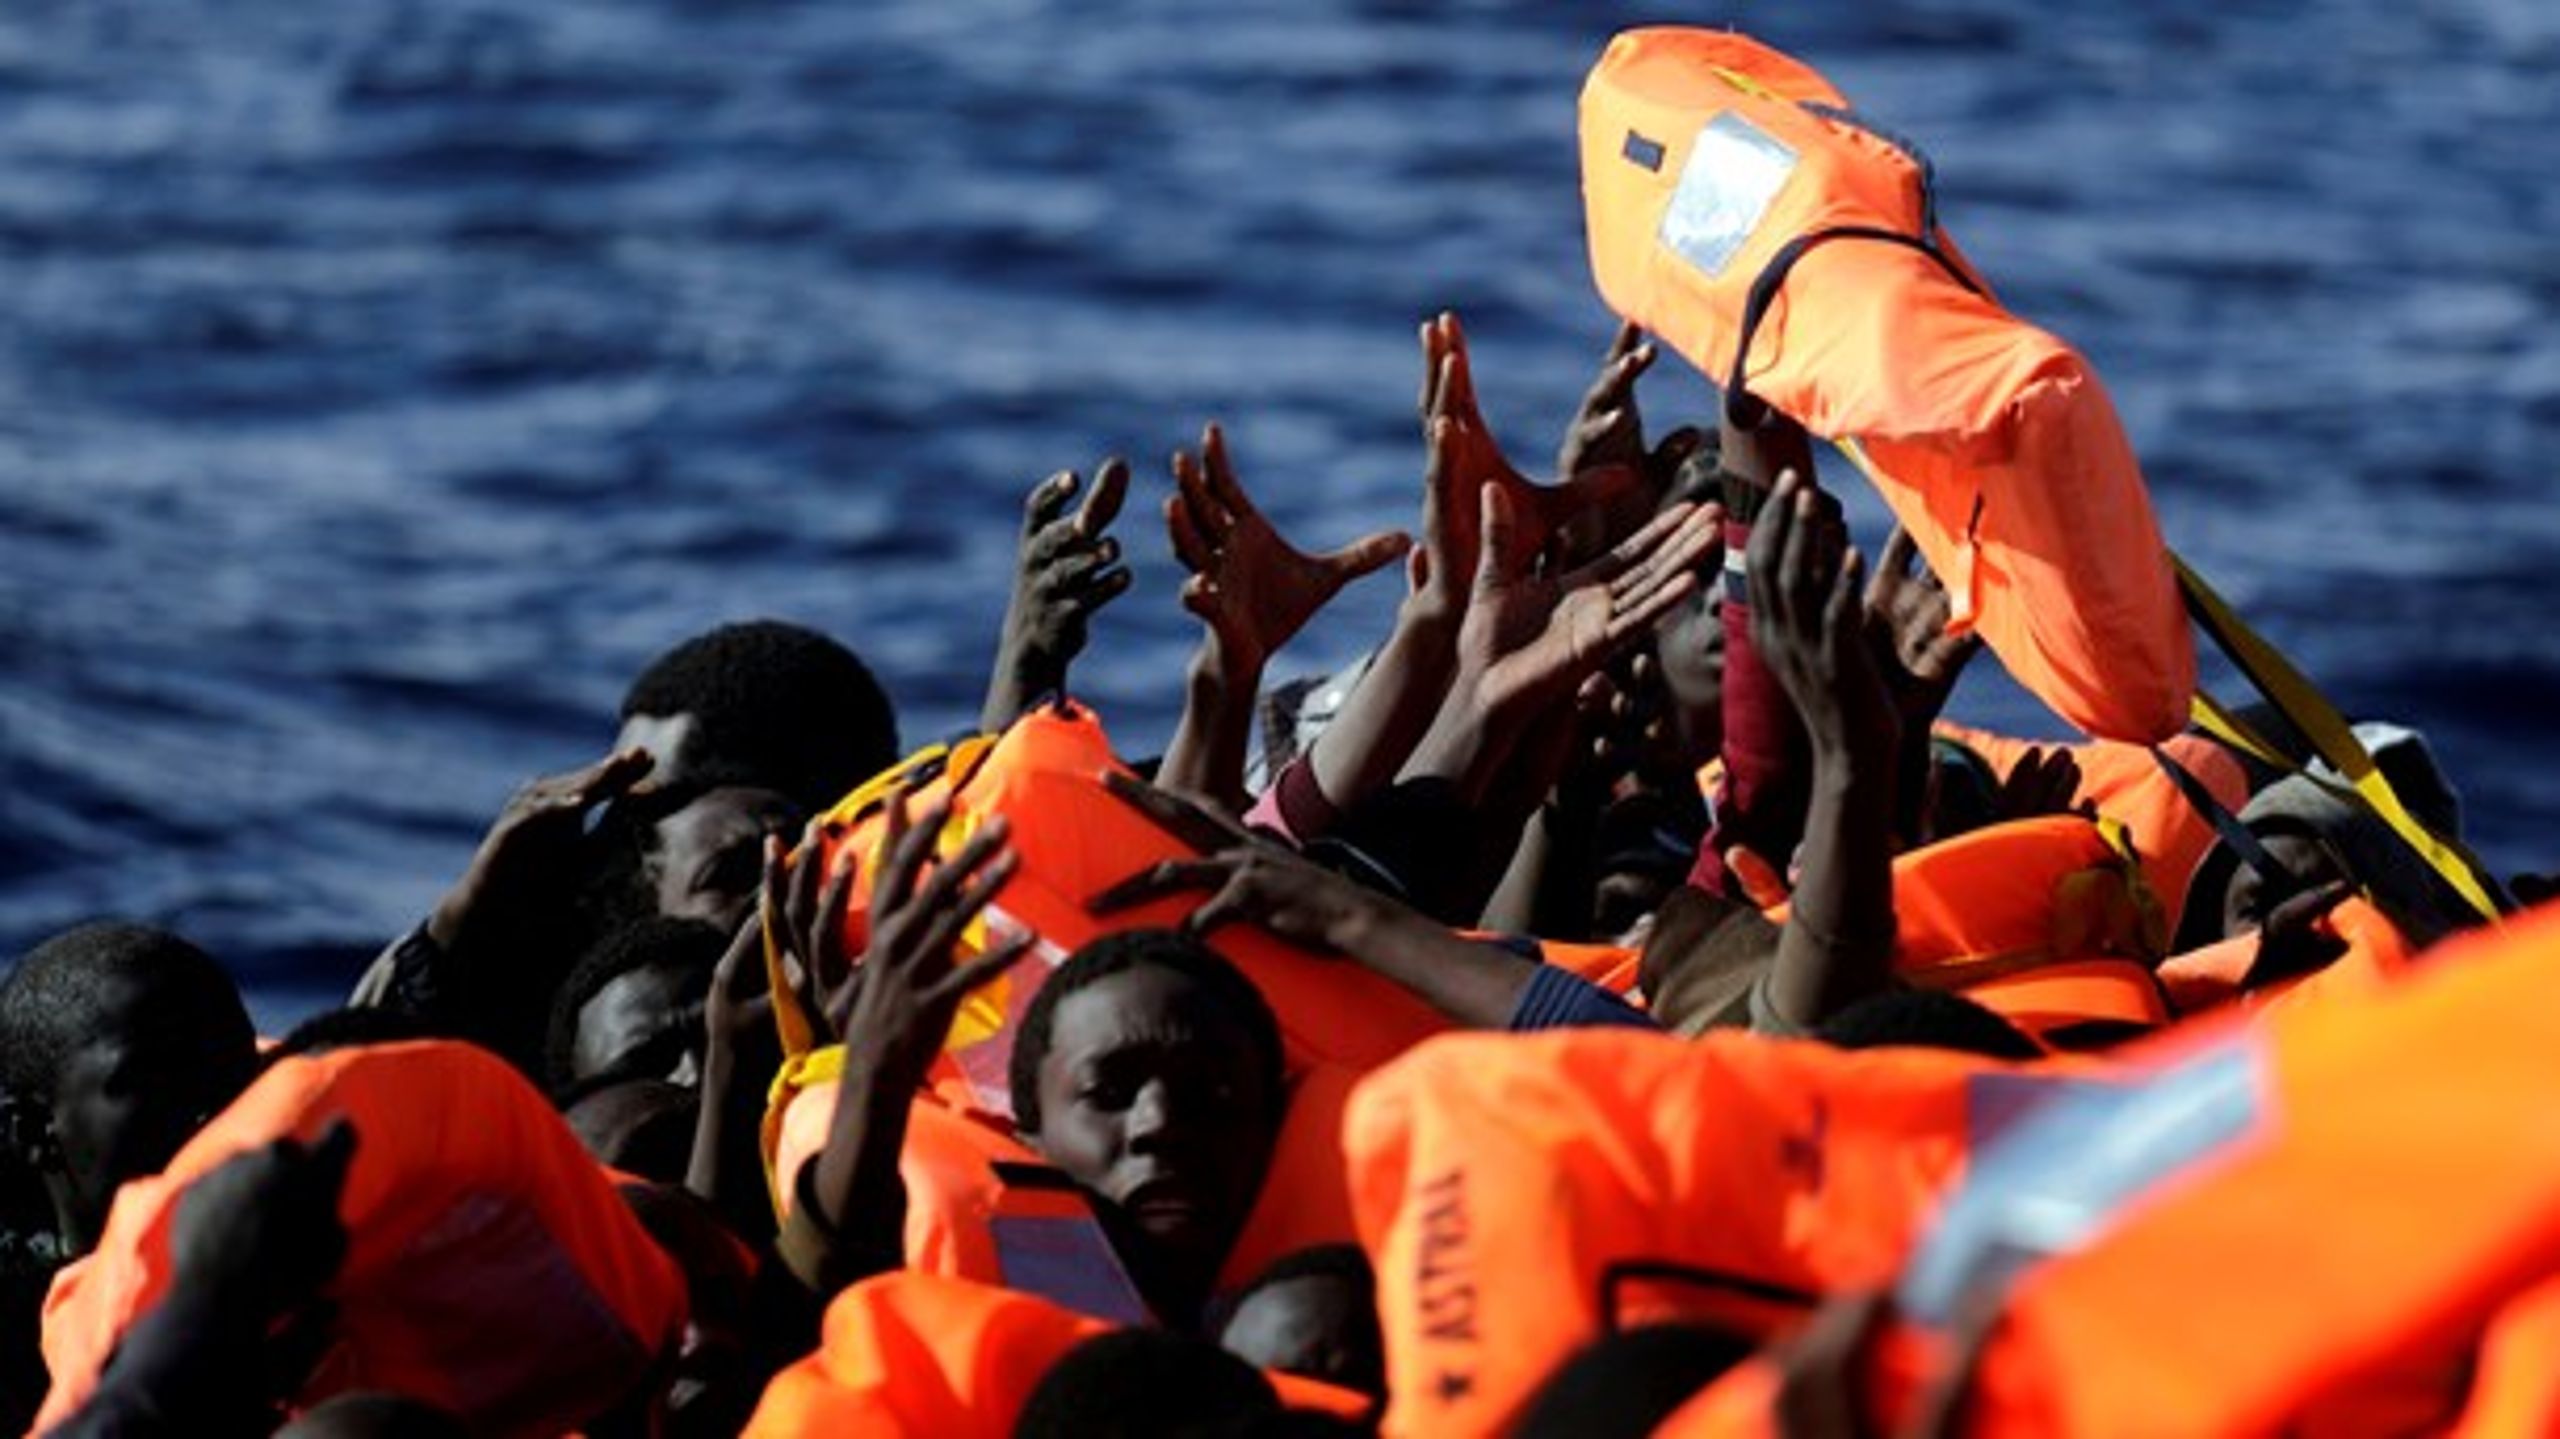 I EU-Kommissionens forslag til en asylpagt åbnes der for et forsøg på at få flygtninge væk fra farlige rejser over Middelhavet og ud på lovlige adgangsveje til Europa, skriver Nikolas Feith Tan.